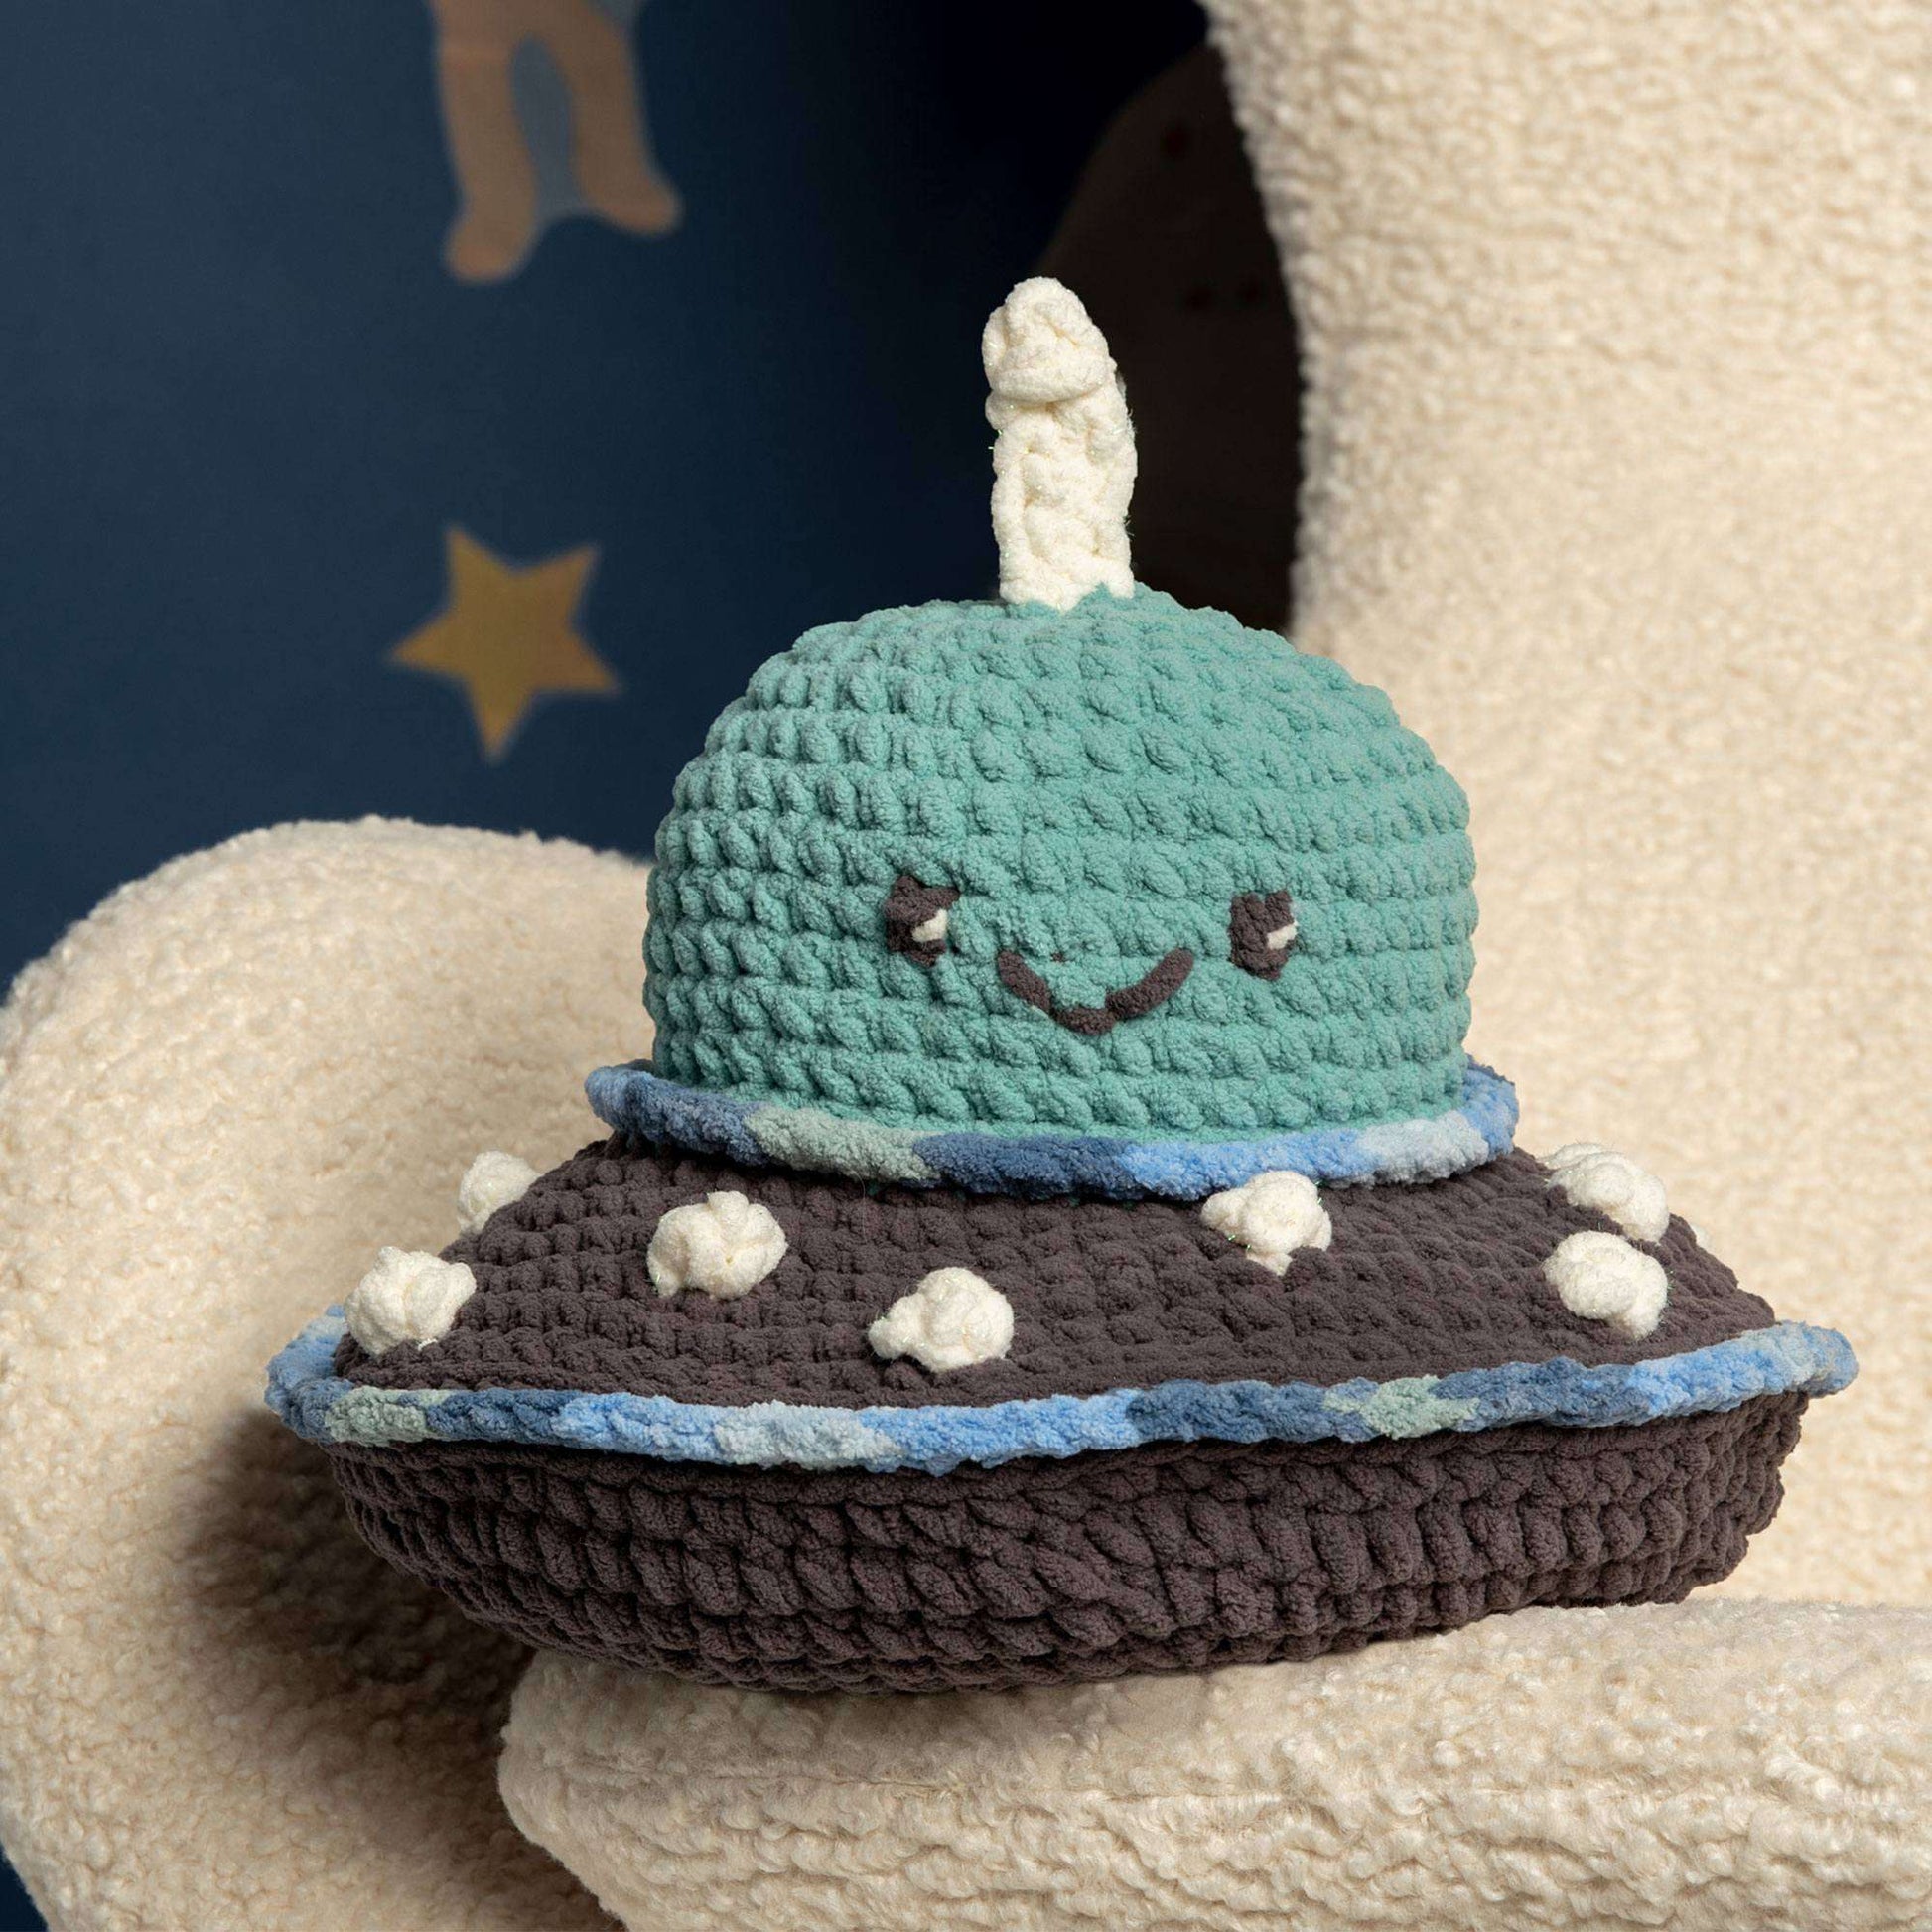 Bernat I Want To Believe Crochet Ufo Stuffie Crochet Toy made in Bernat Baby Blanket Sparkle yarn